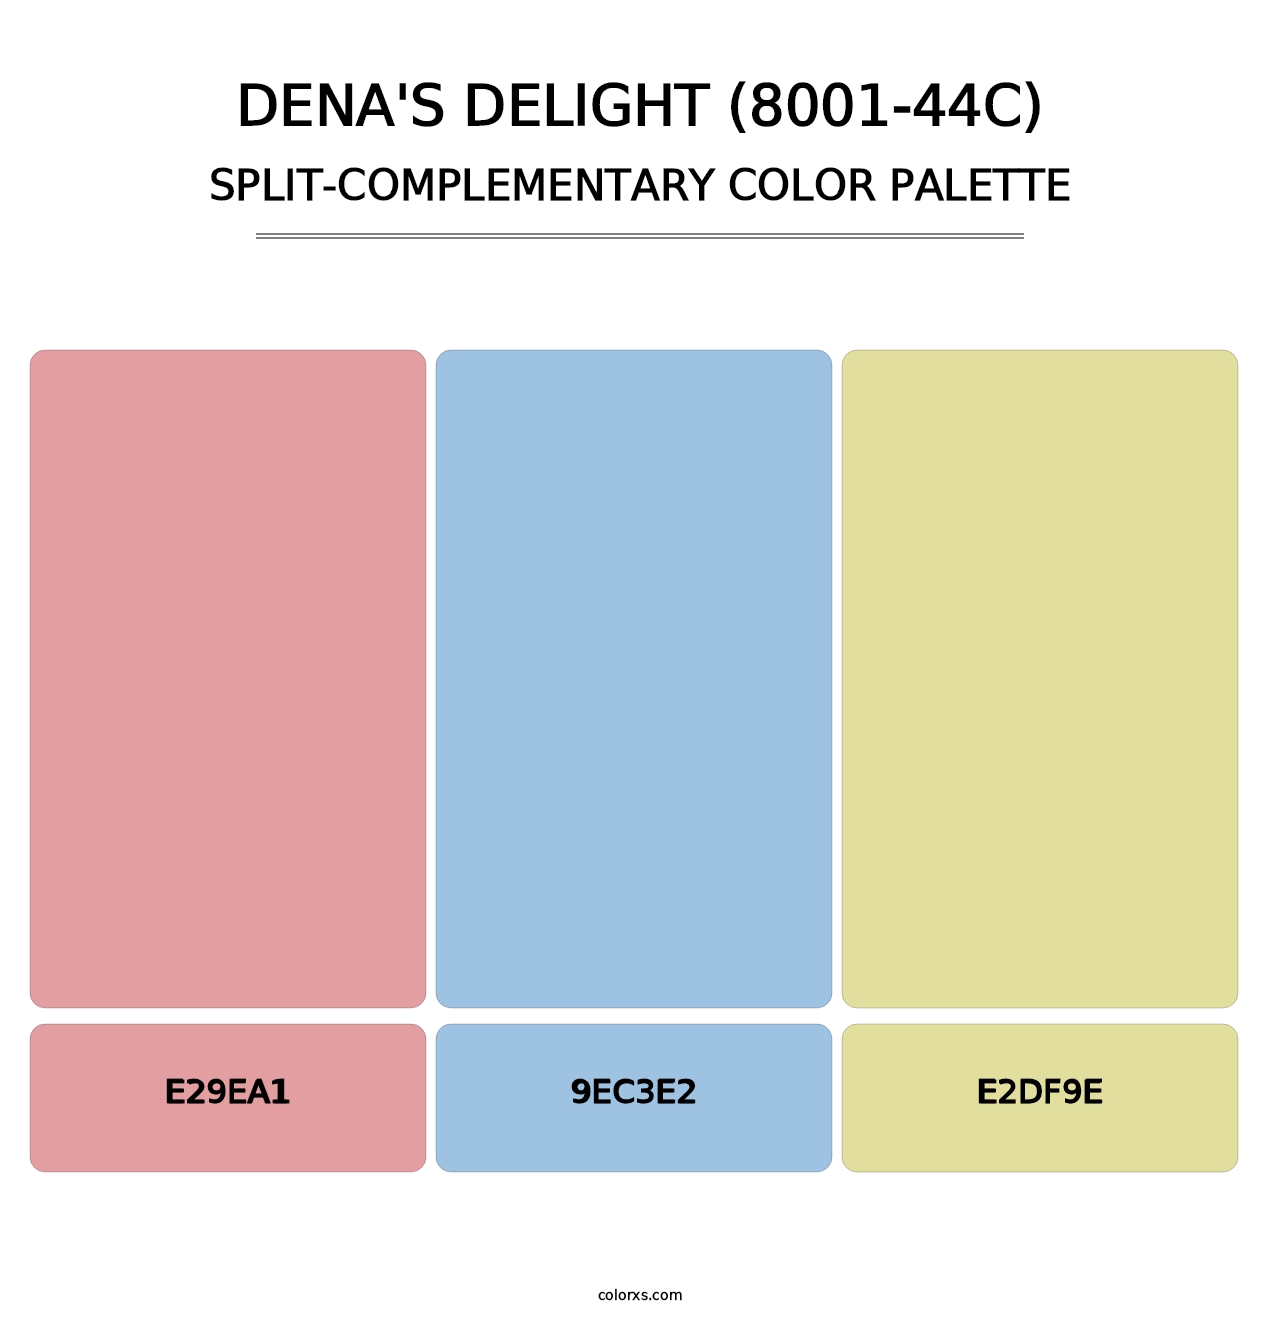 Dena's Delight (8001-44C) - Split-Complementary Color Palette